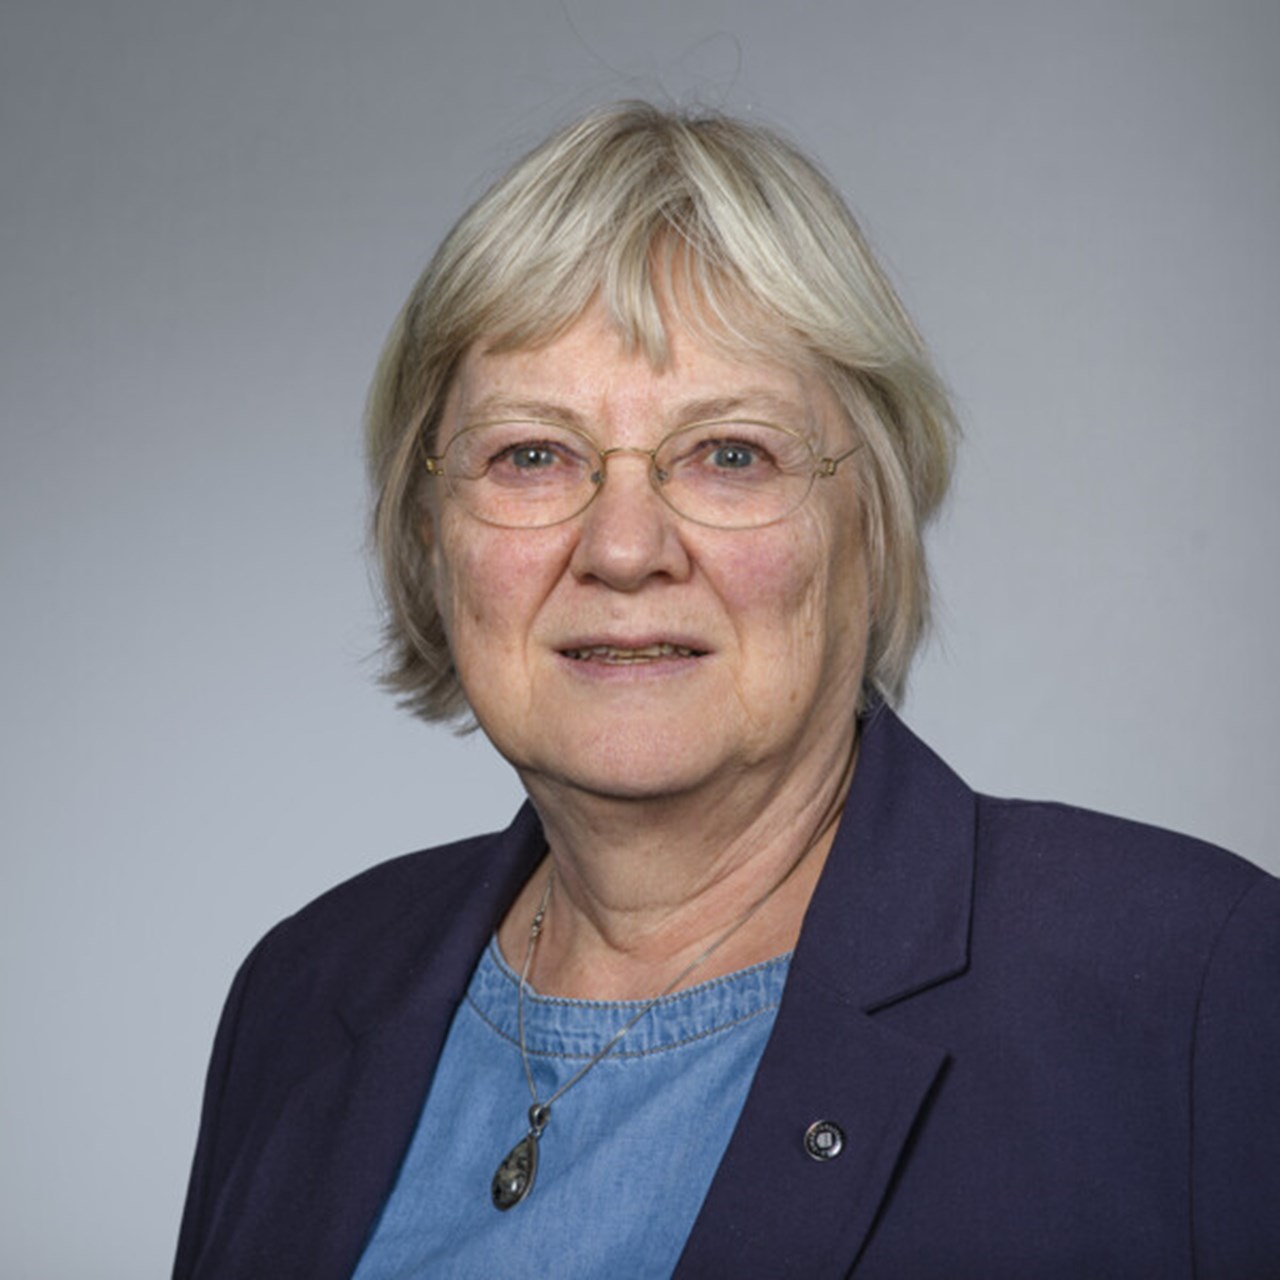 Porträtt på Heidi Hansson, vicerektor vid Umeå universitet.